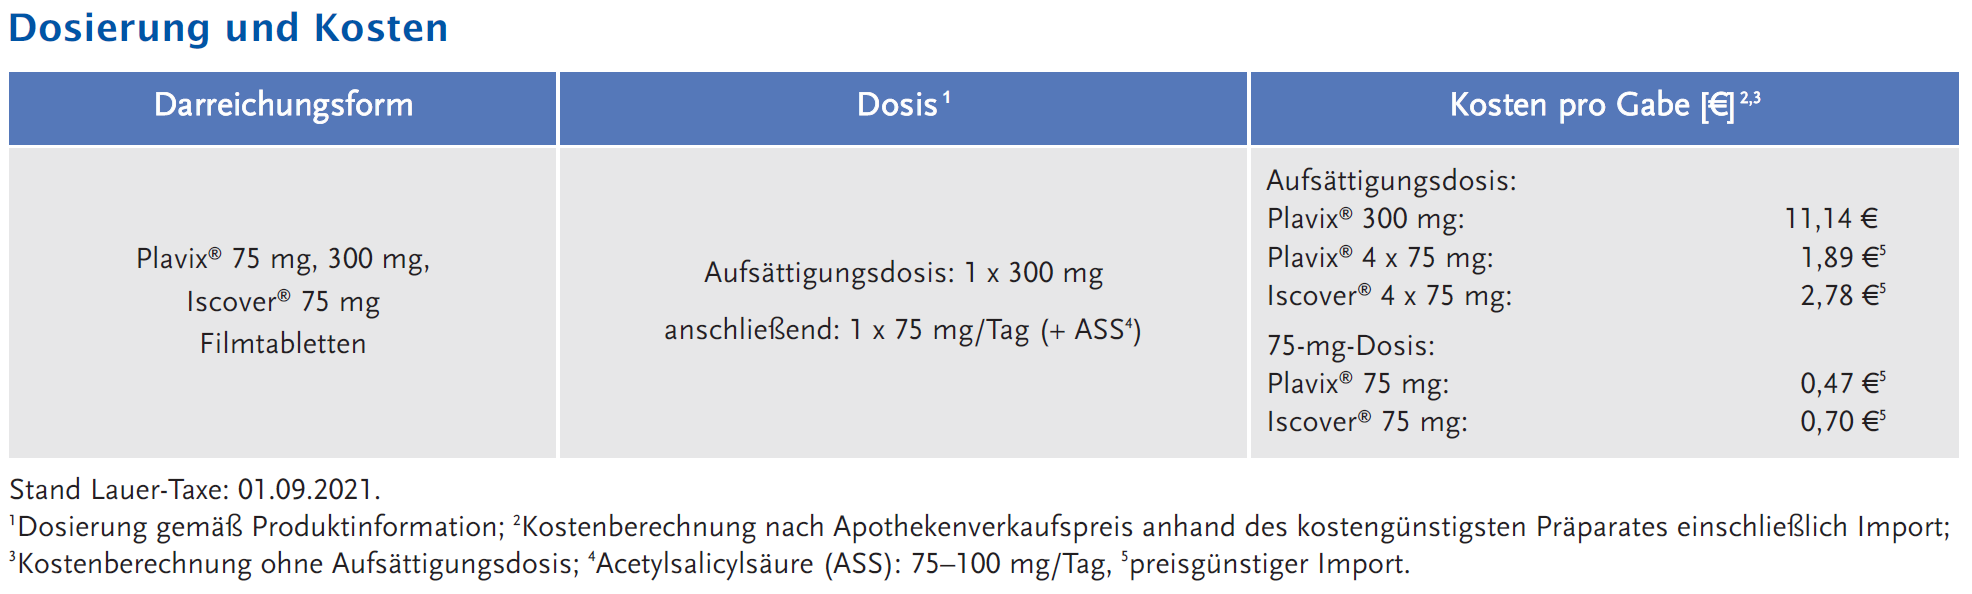 Abbildung 1: Dosierung und Kosten